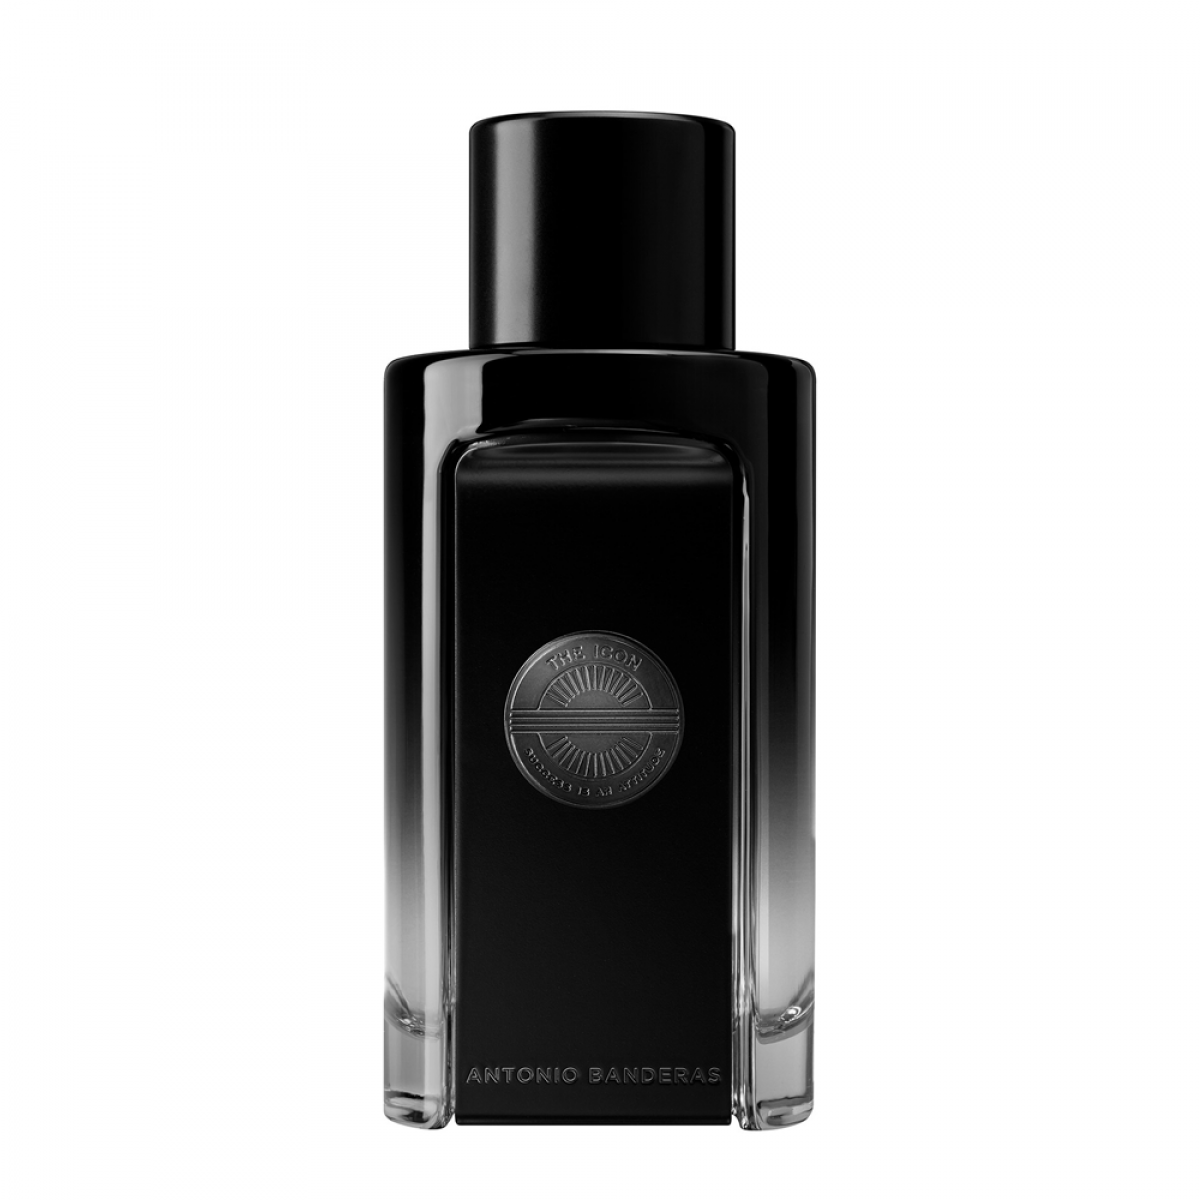 The Icon Eau de Parfum